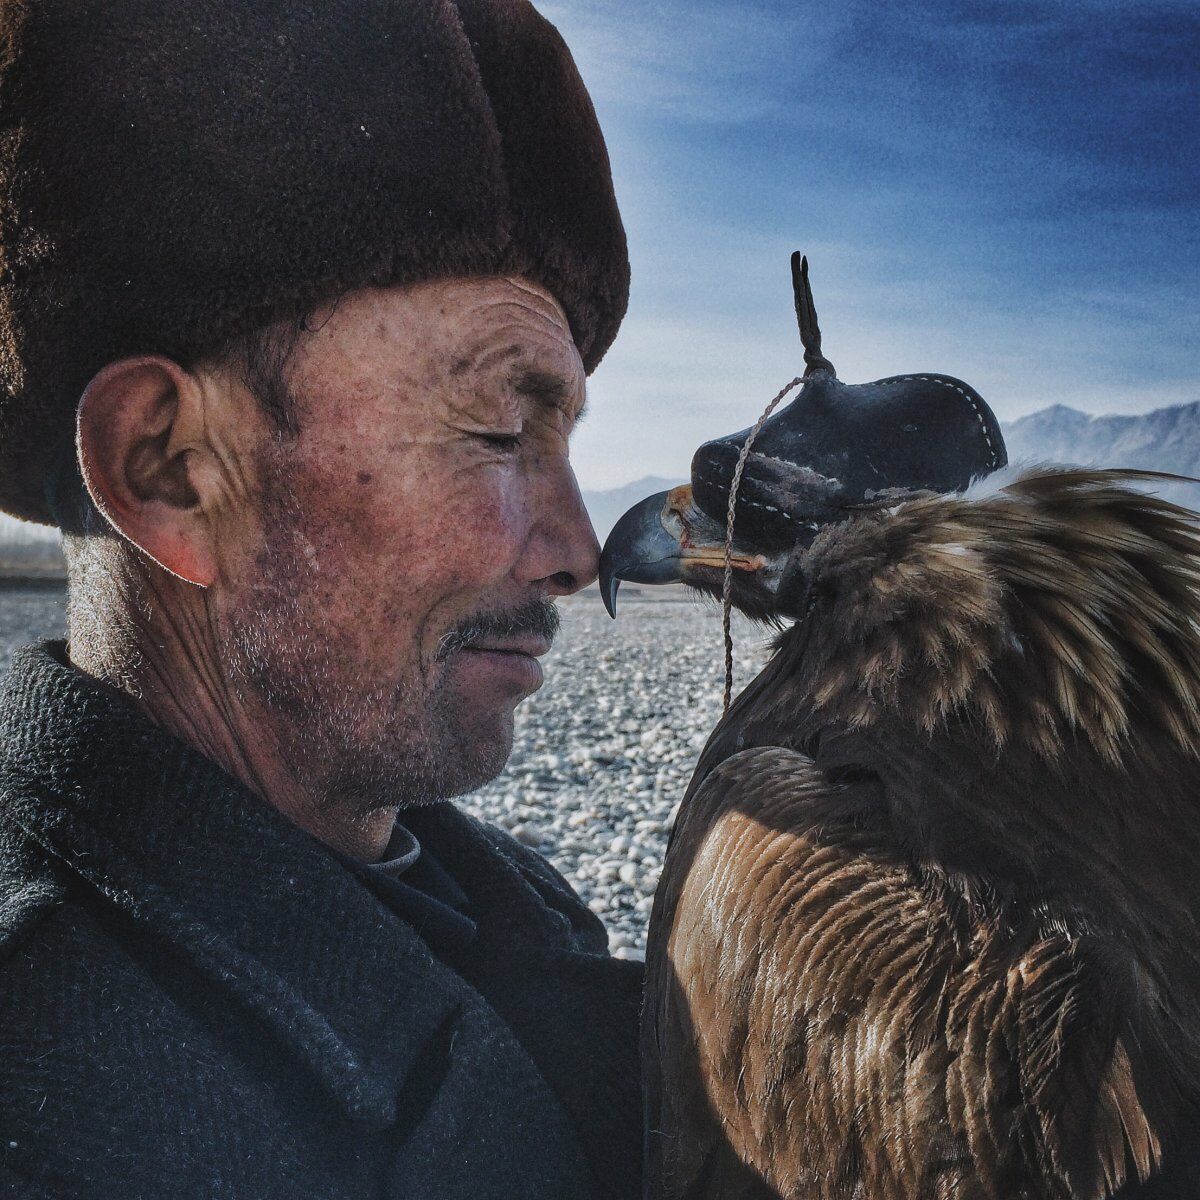 Man and the Eagle, pemenang utama Penghargaan Fotografi iPhone 2016